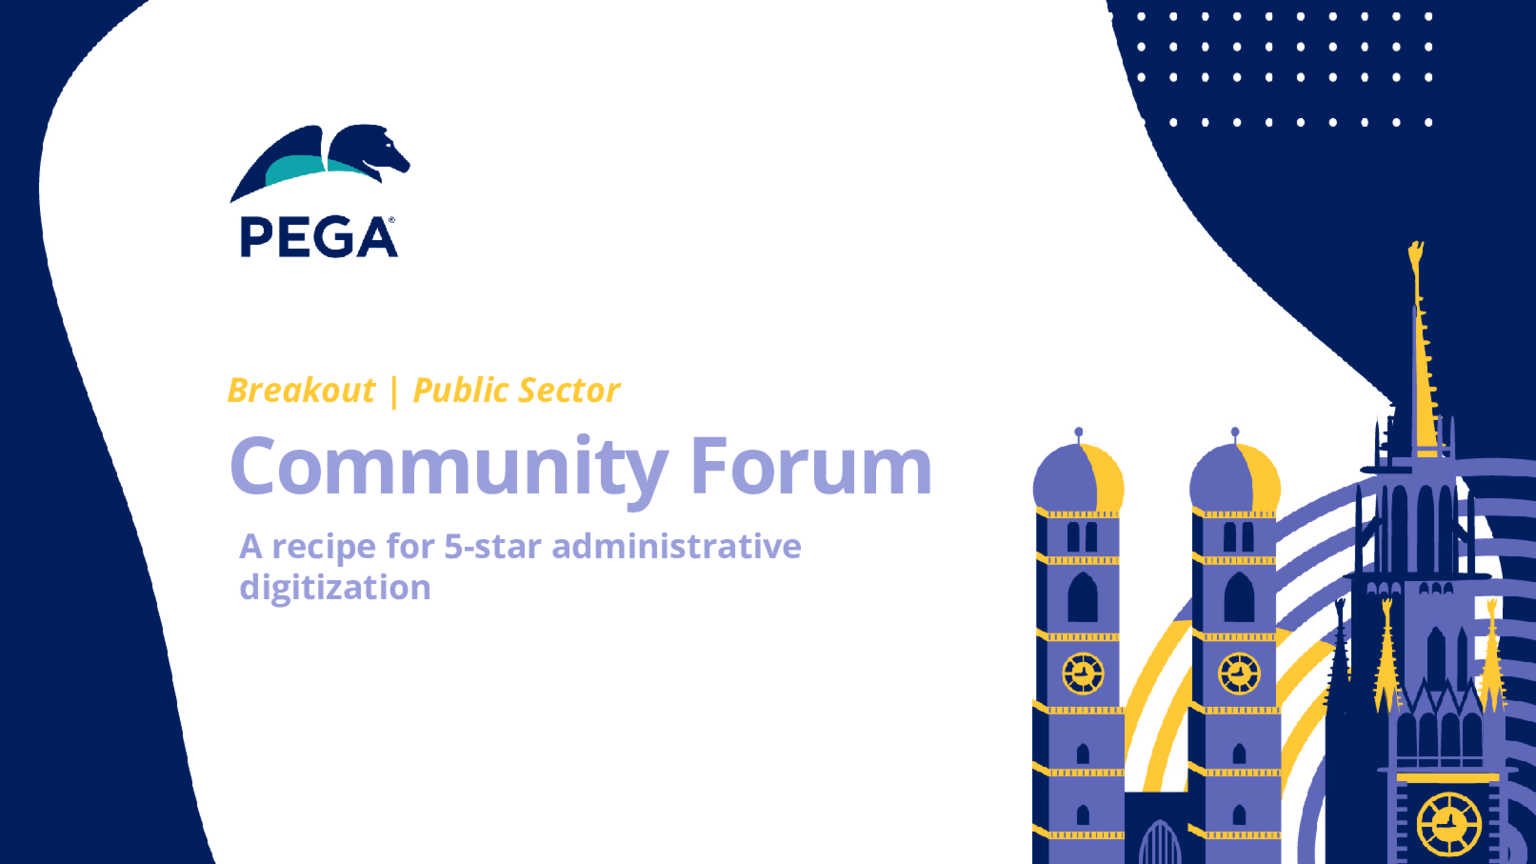 Pega Community Forum - T-Systems Keynote: Ein Rezept für 5-Sterne Verwaltungsdigitalisierung (Präsentation)